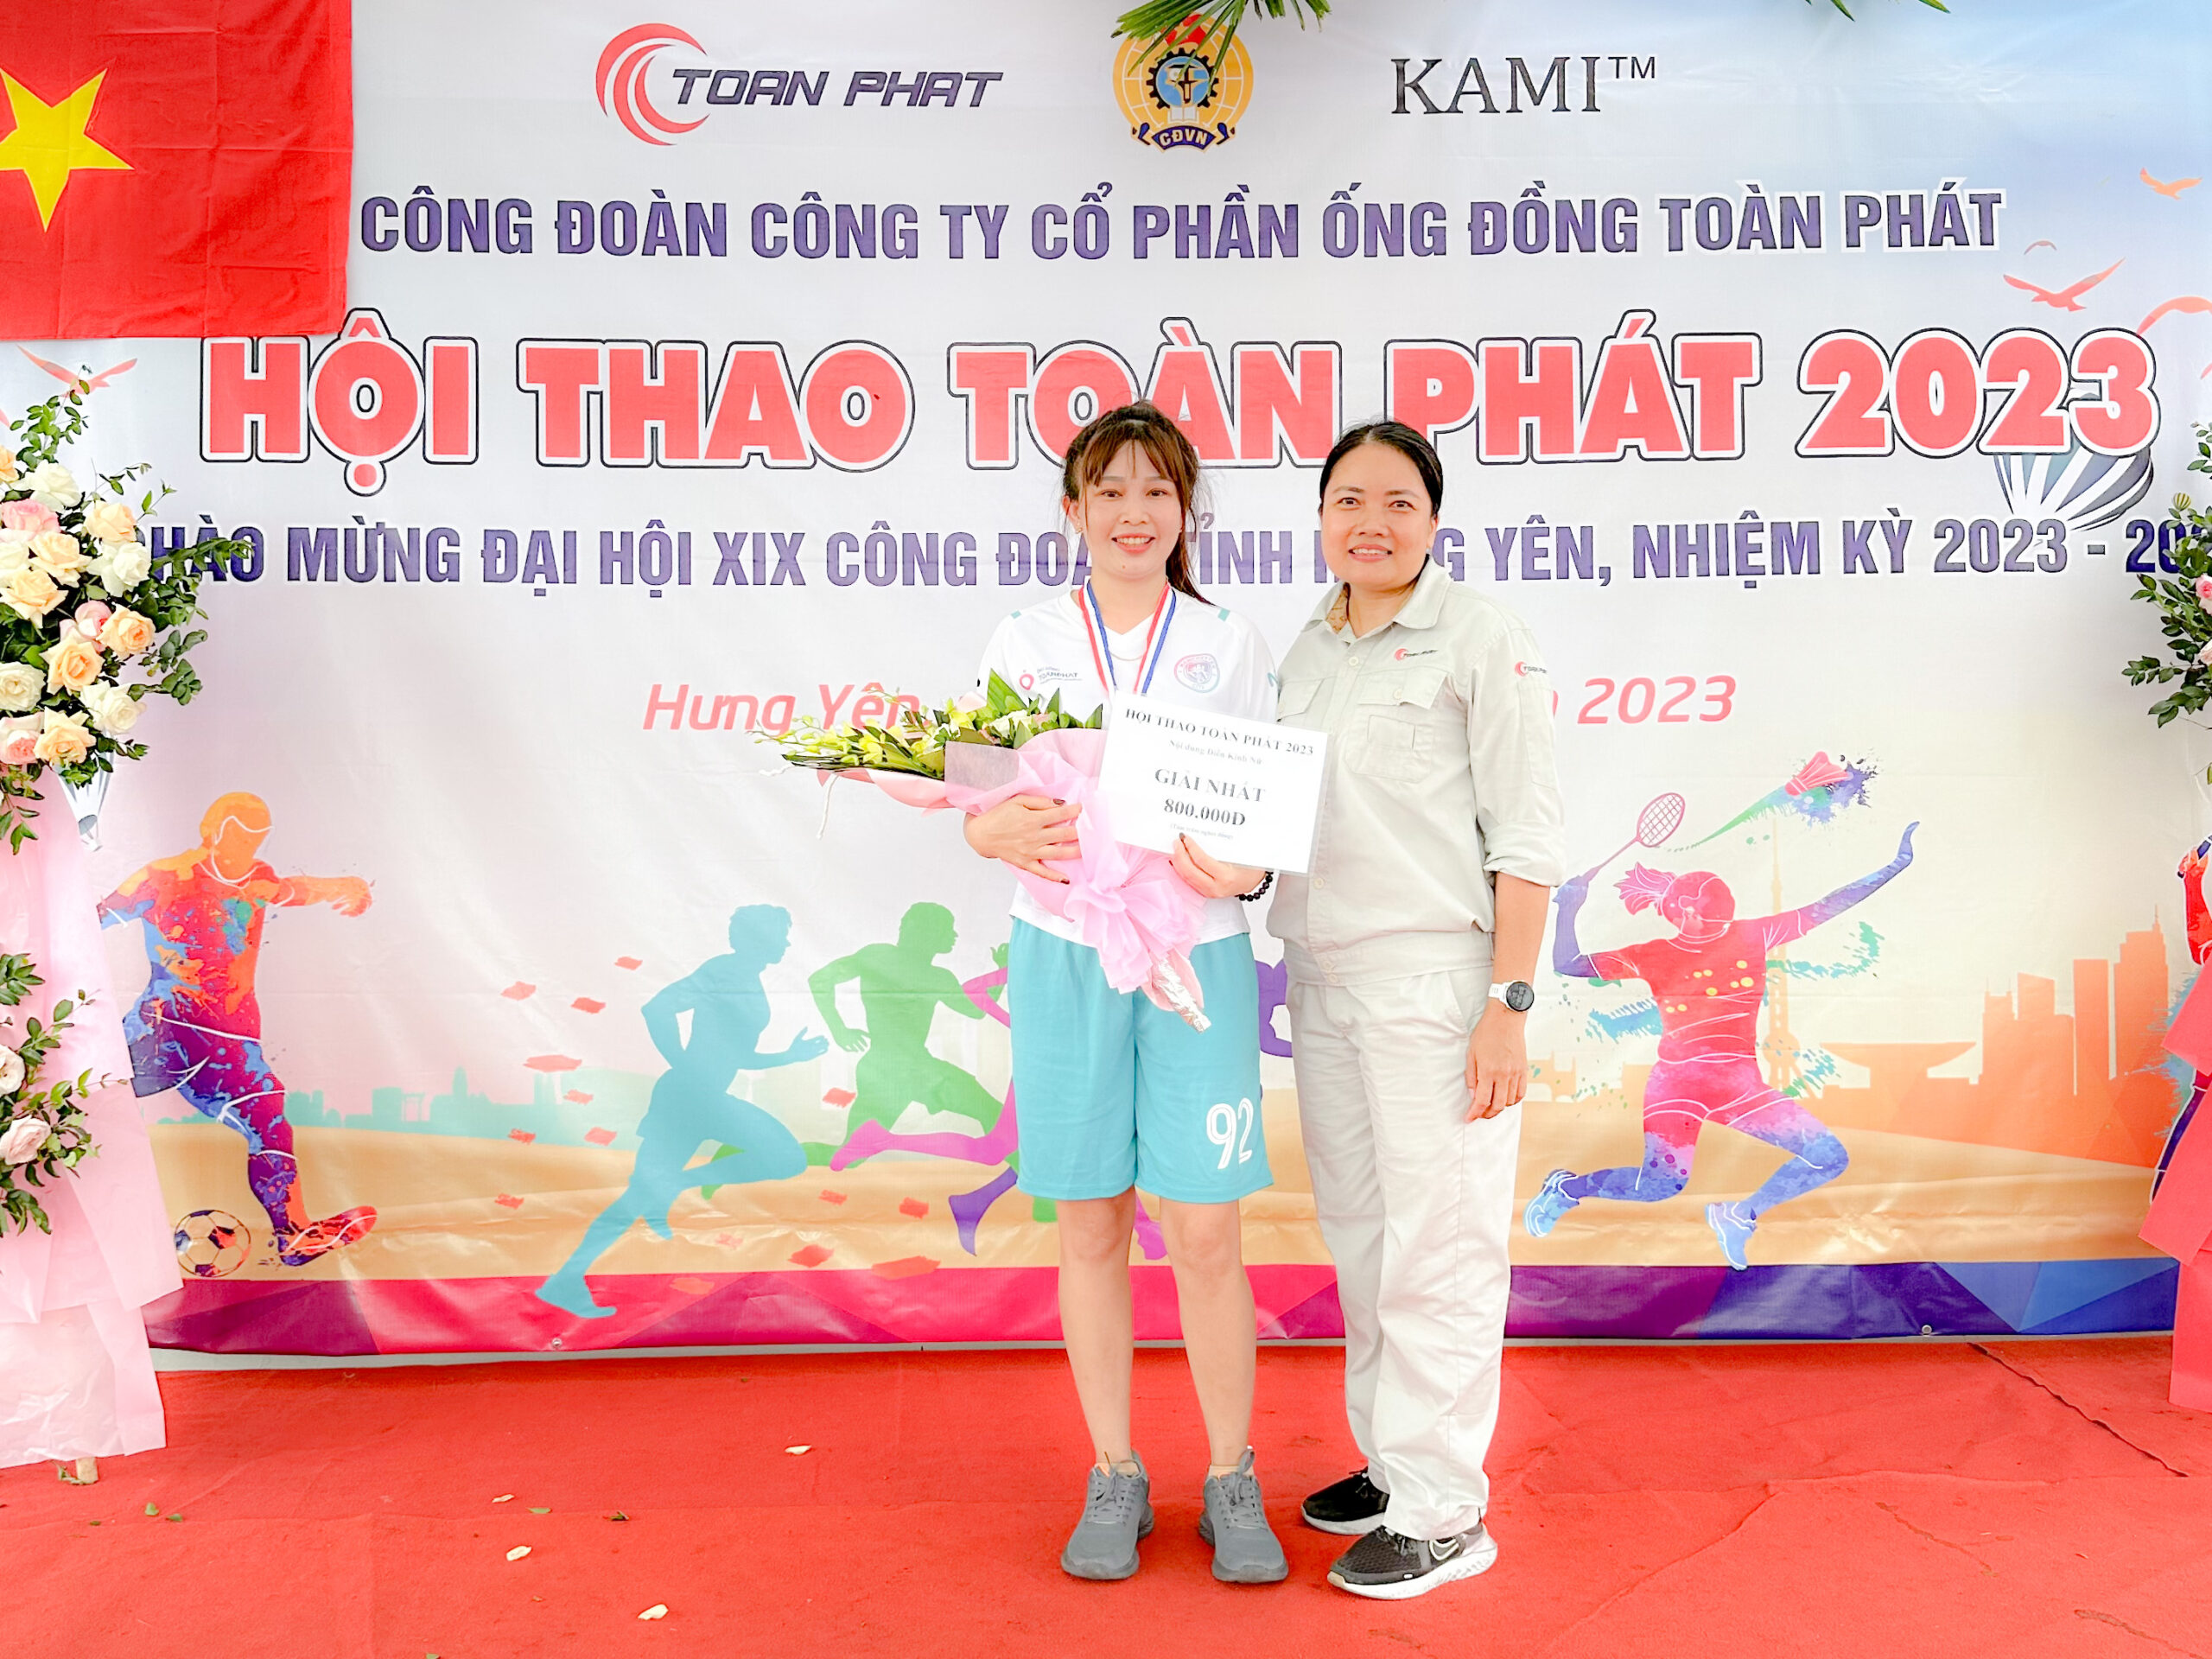 Bà Nguyễn Thanh Huế - Phó Tổng Giám đốc công ty (bên phải) trao Giải nhất điền kinh Nữ chị Ngân Thị Yến bộ phận Đóng gói với thành tích 6 phút 36 giây